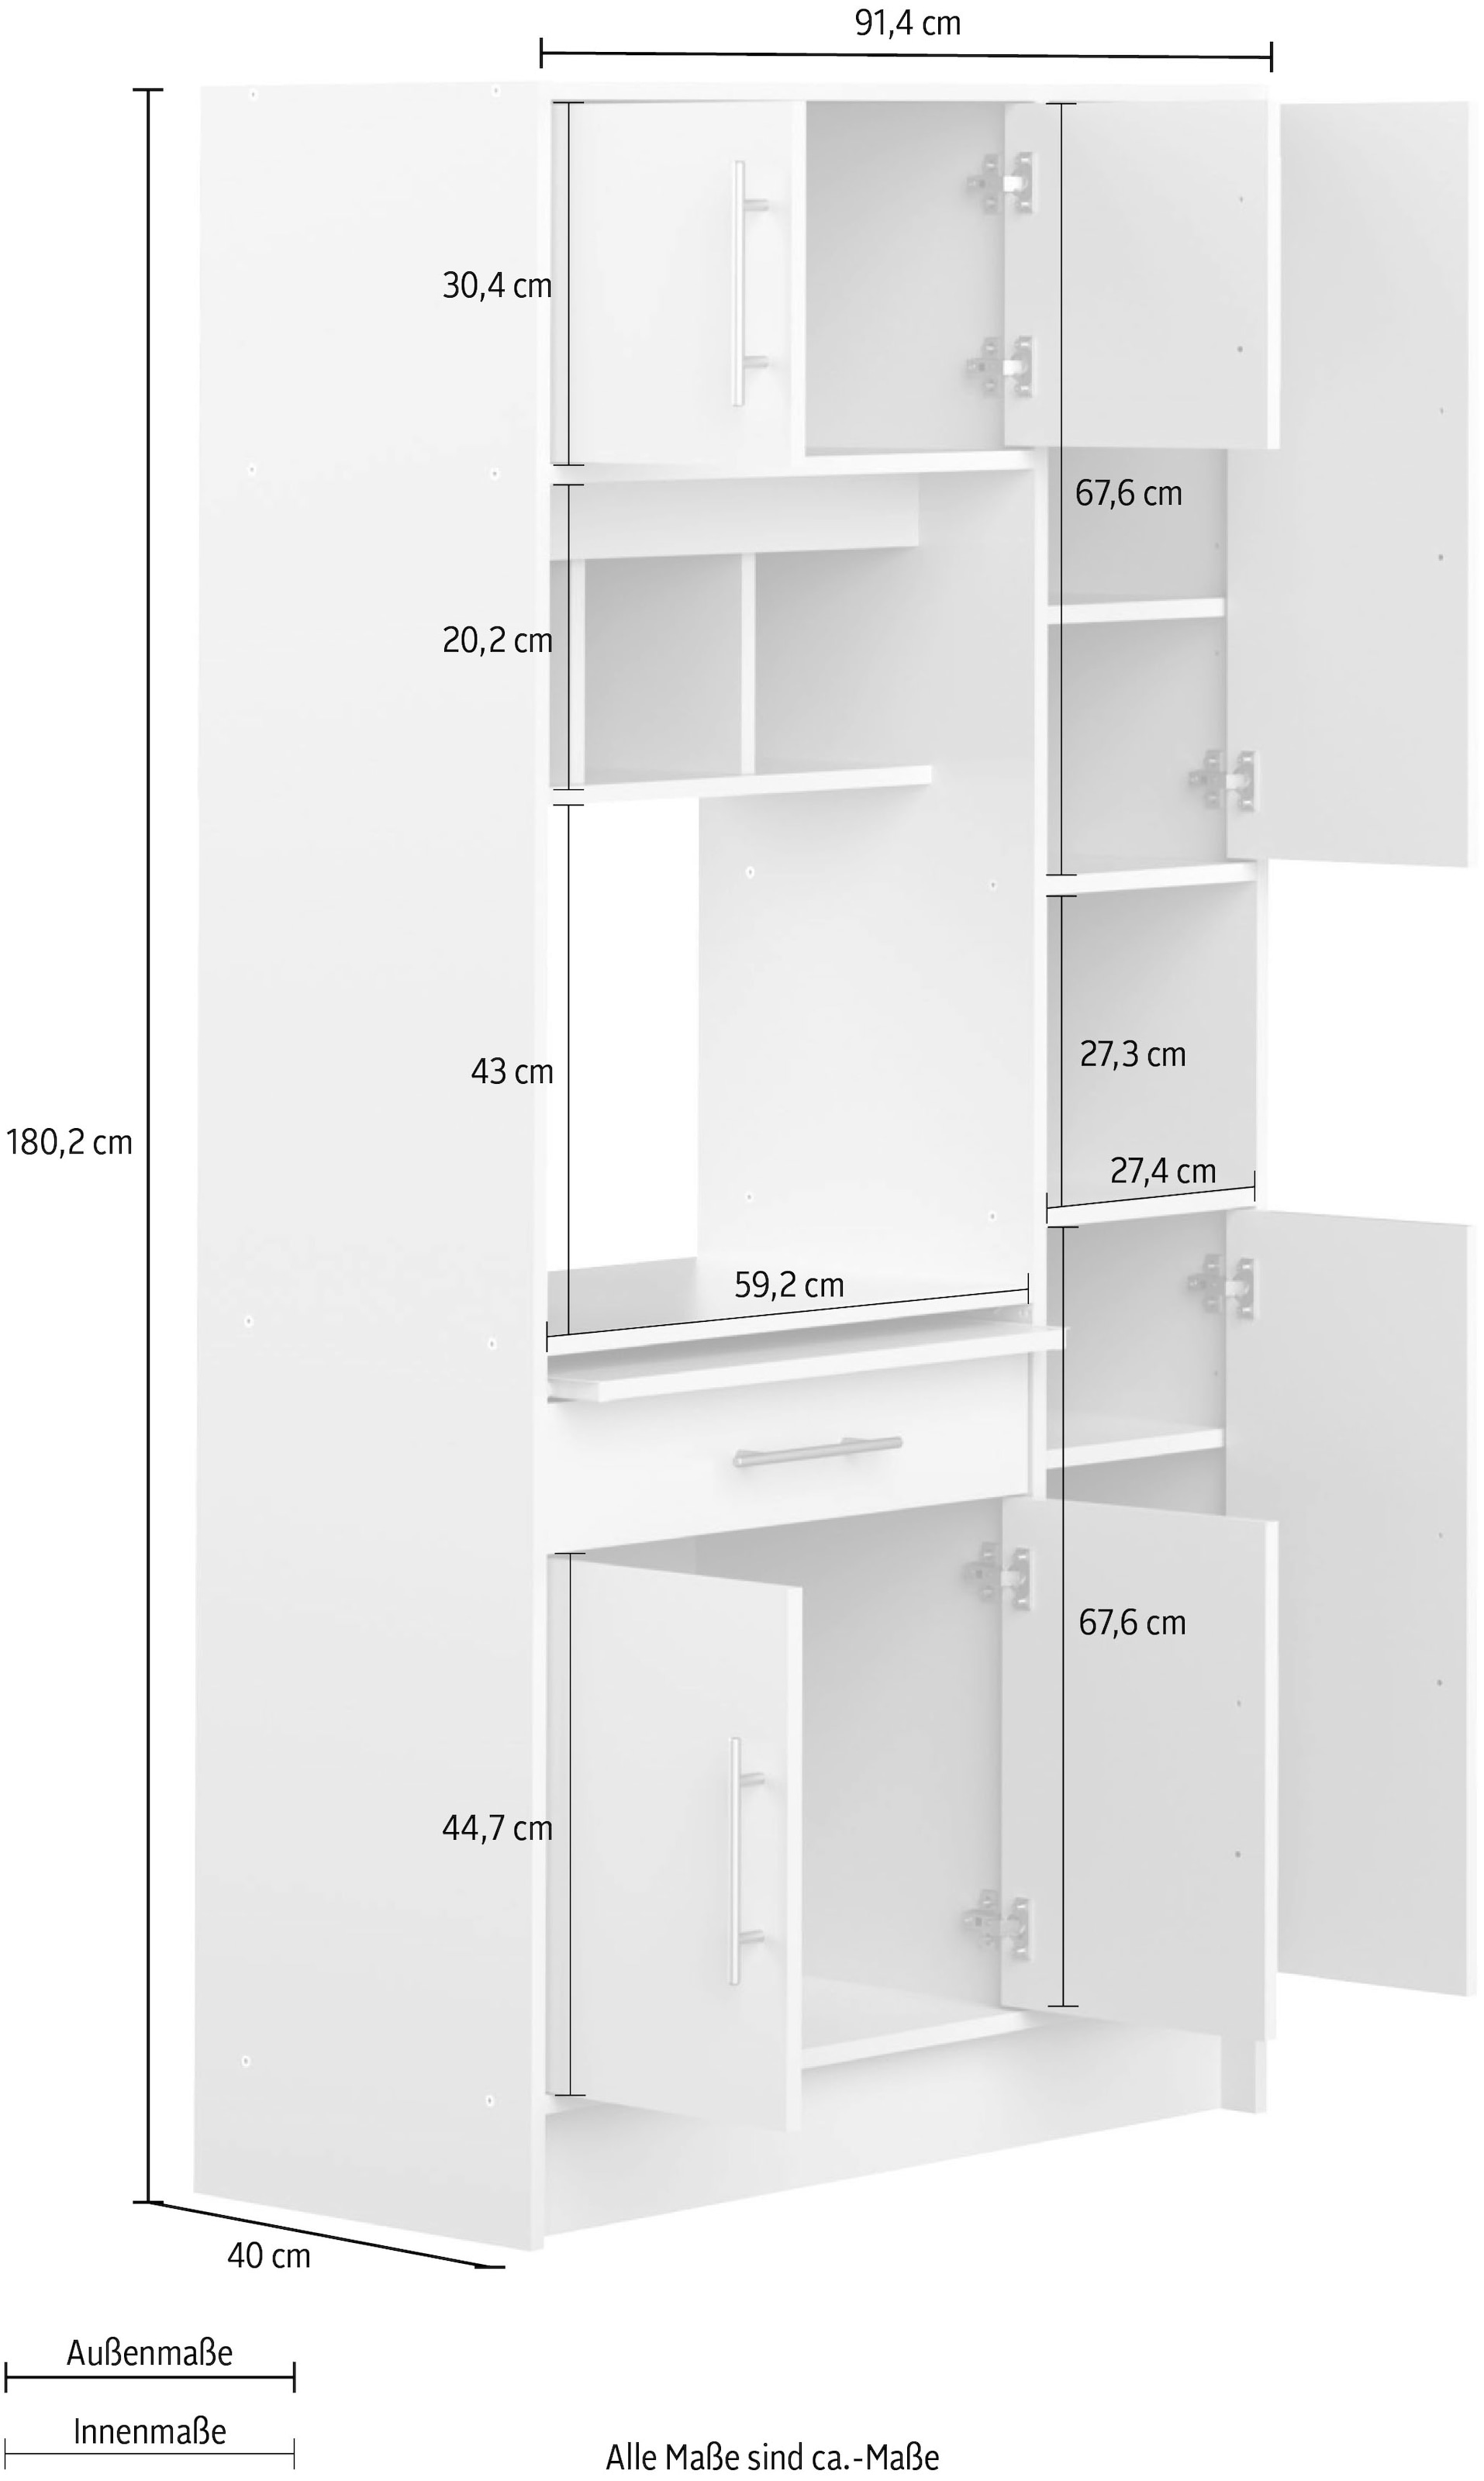 TemaHome Küchenbuffet »Louise«, ausziehbarer Schrank, mit Fach für eine Mikrowelle, Höhe 180 cm